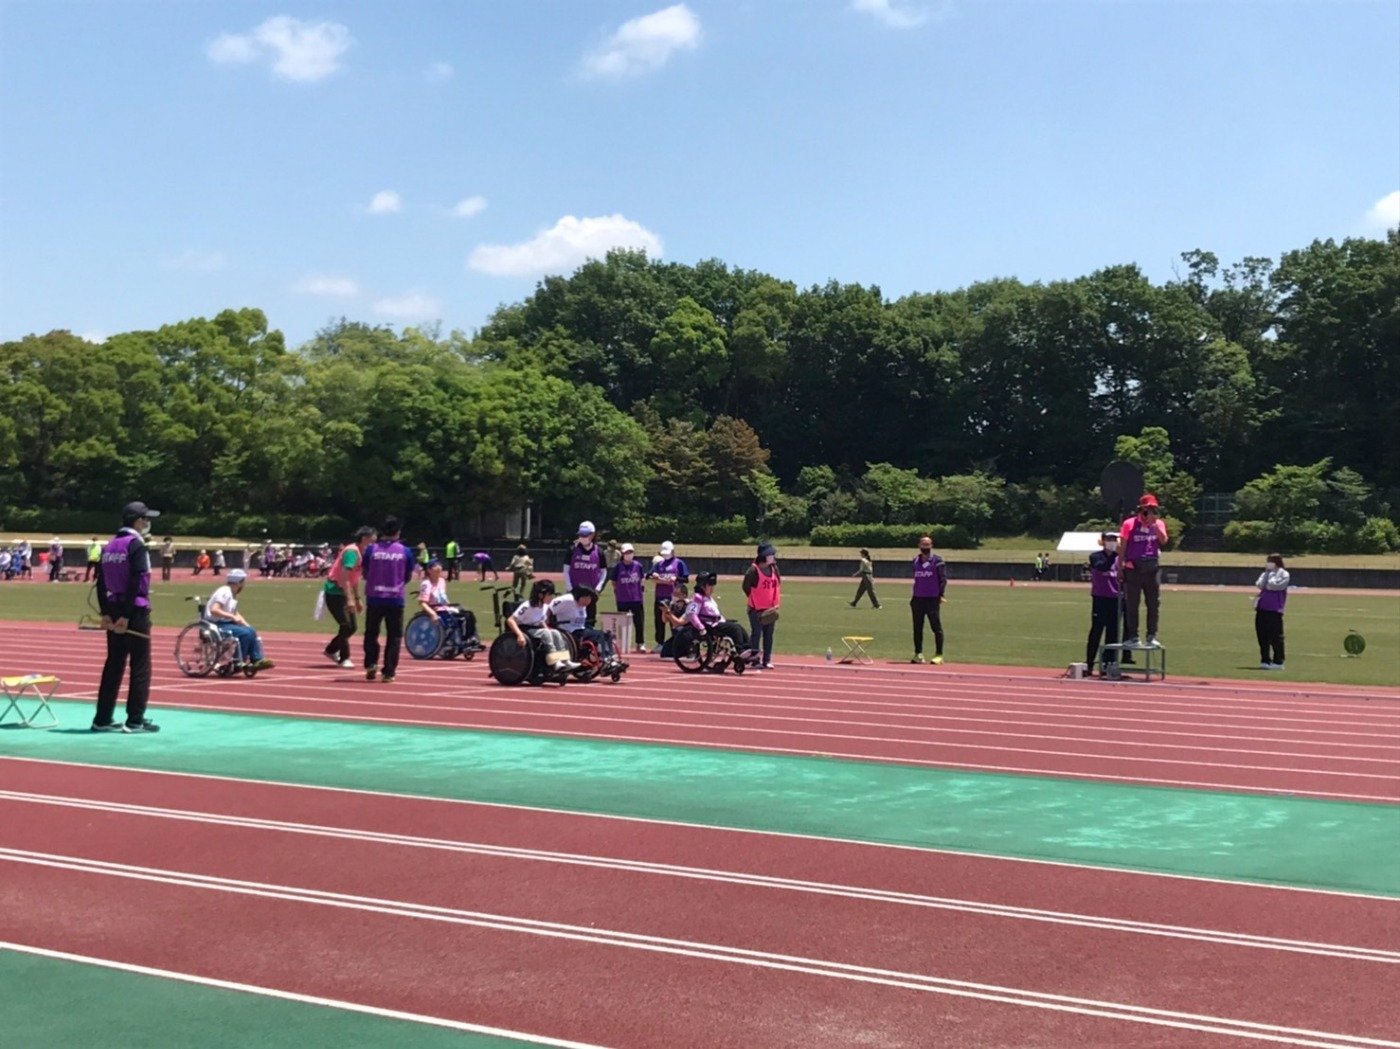 愛知県障害者スポーツ大会の写真です。